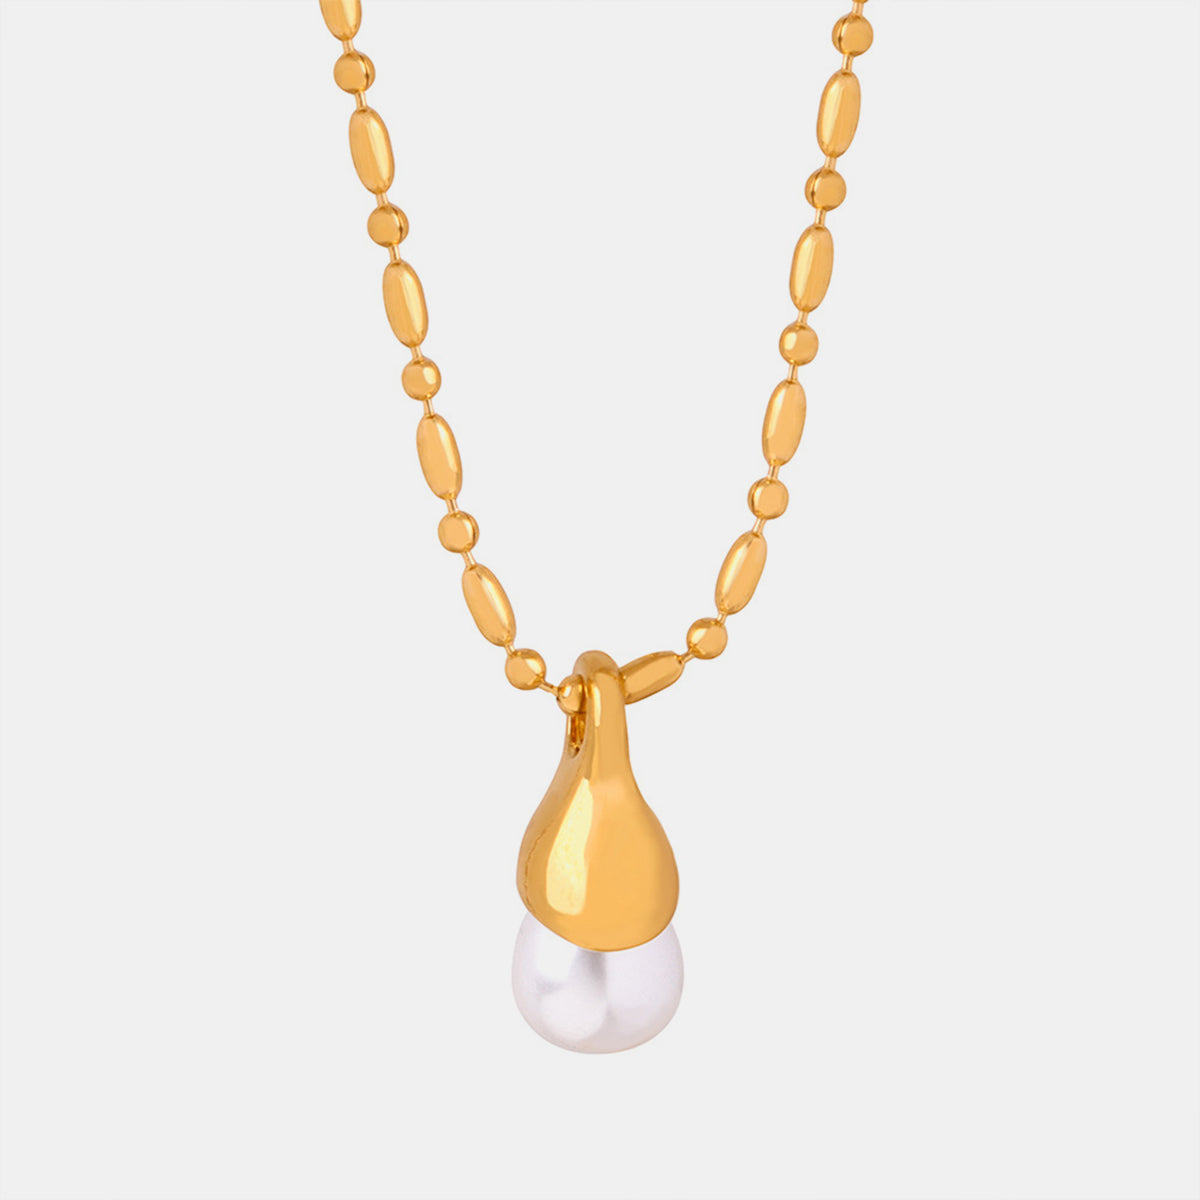 Titanium Steel Pearl Pendant Necklace